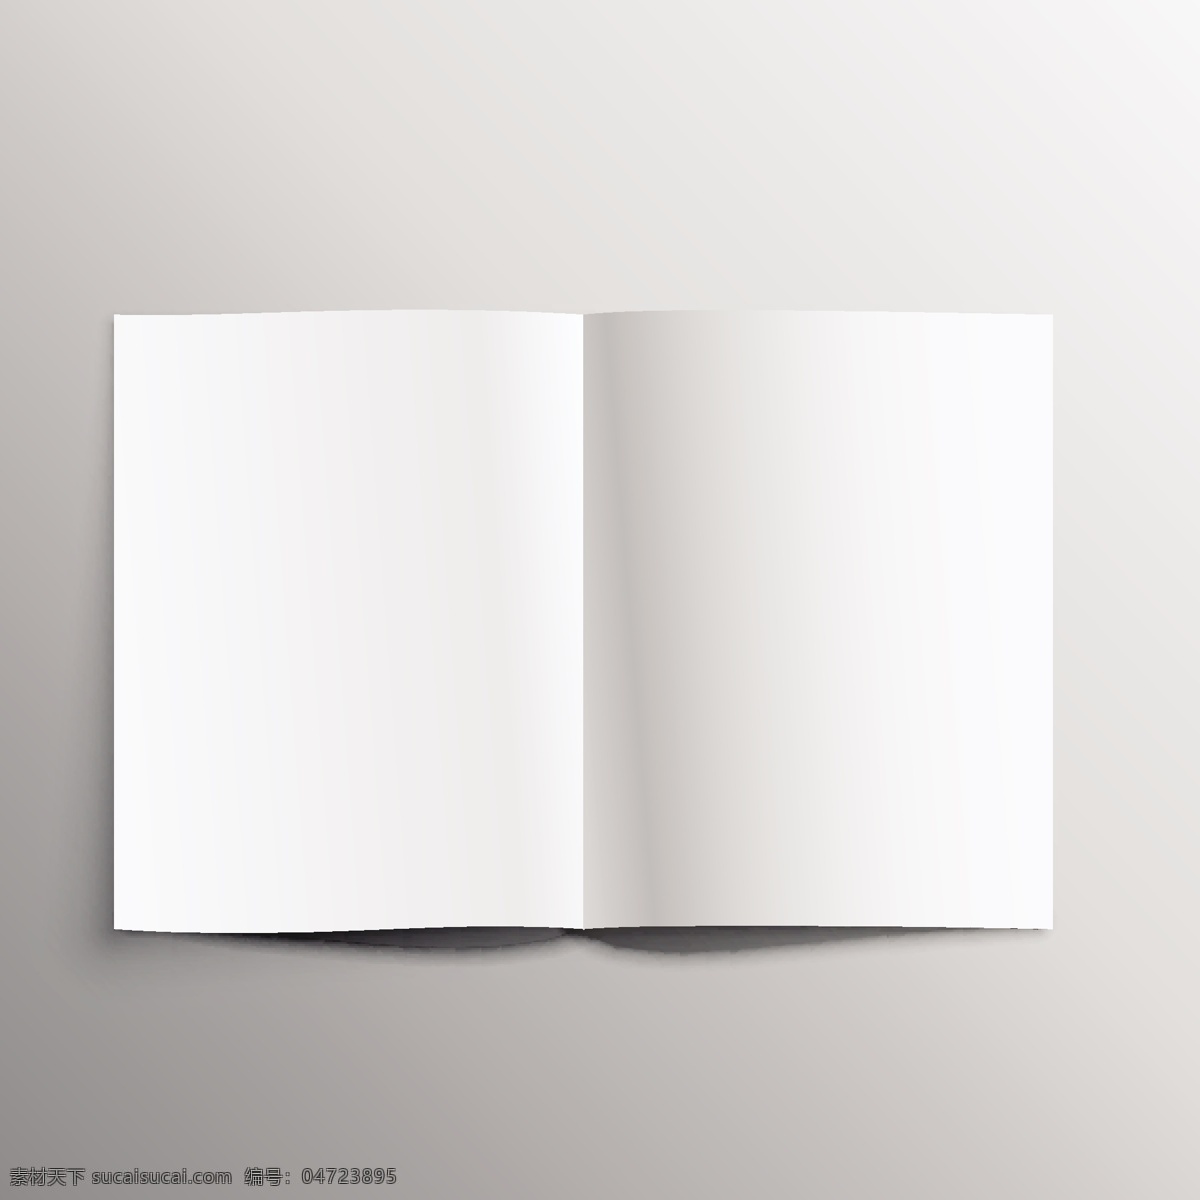 空白画册展示 模板 样机 空白 宣传页 折页 传单 杂志 纸 纸张 效果 展示 画册设计